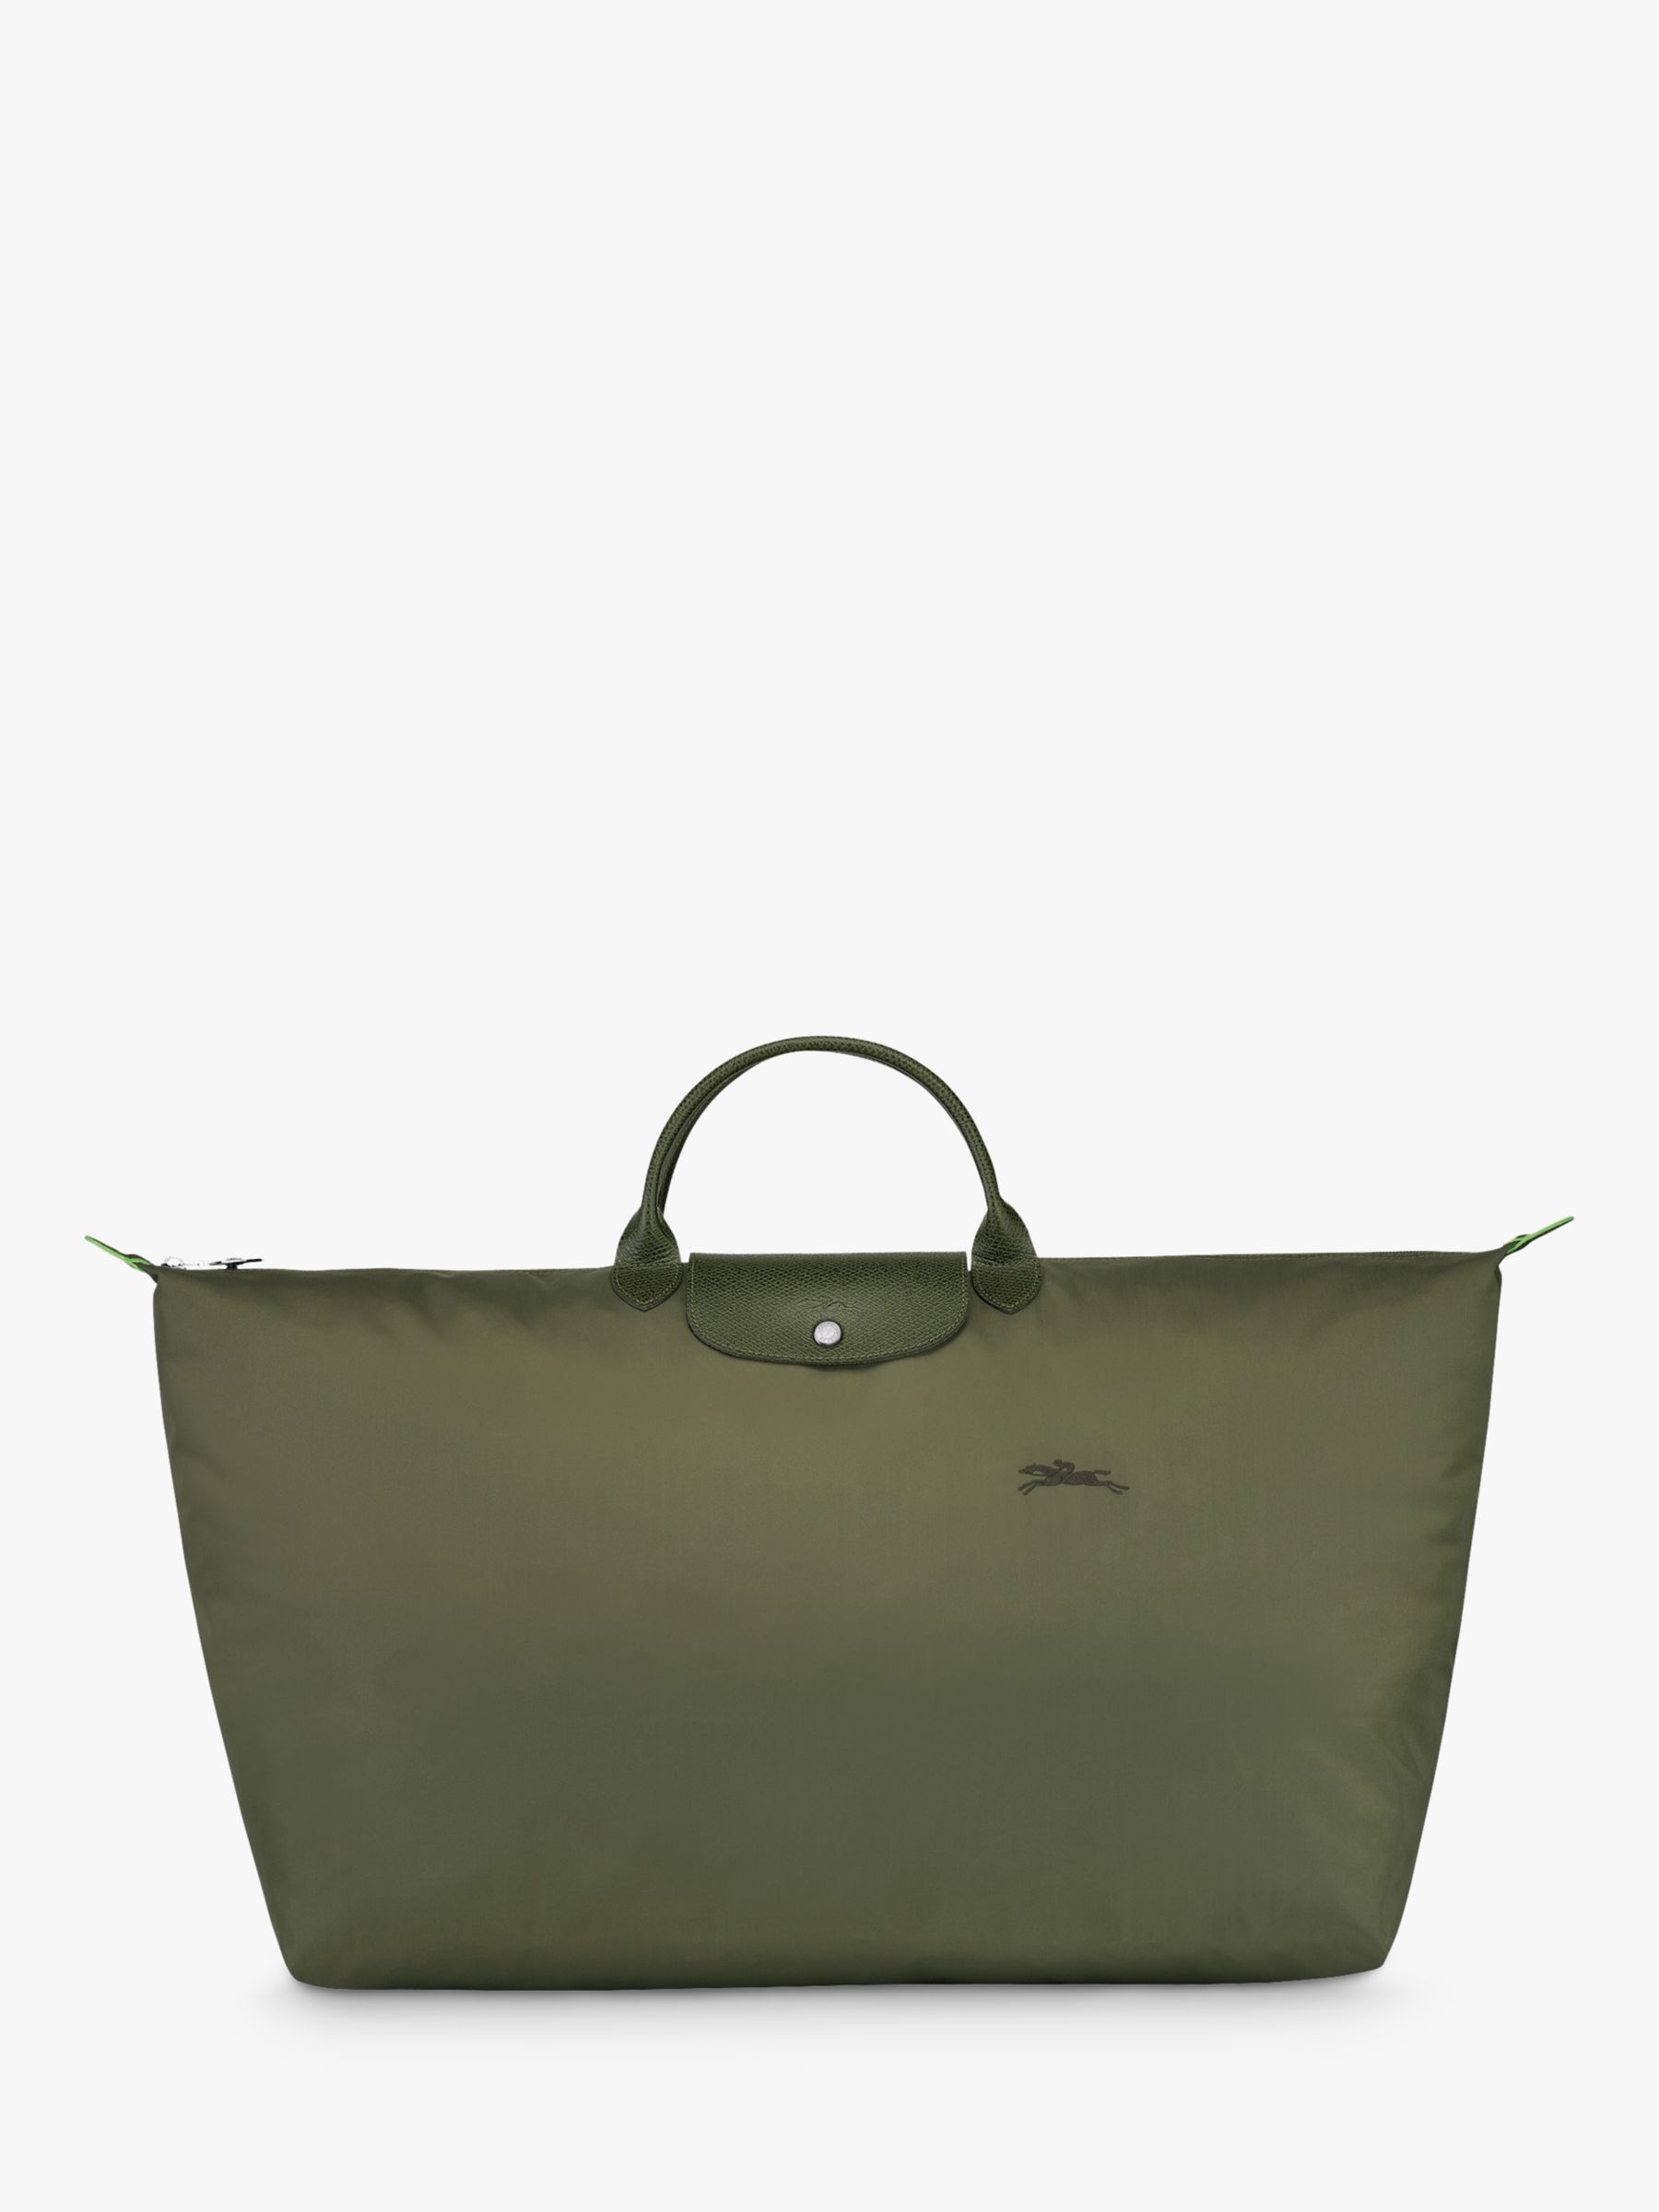 Longchamp XL Le Pliage Original Travel Bag on SALE